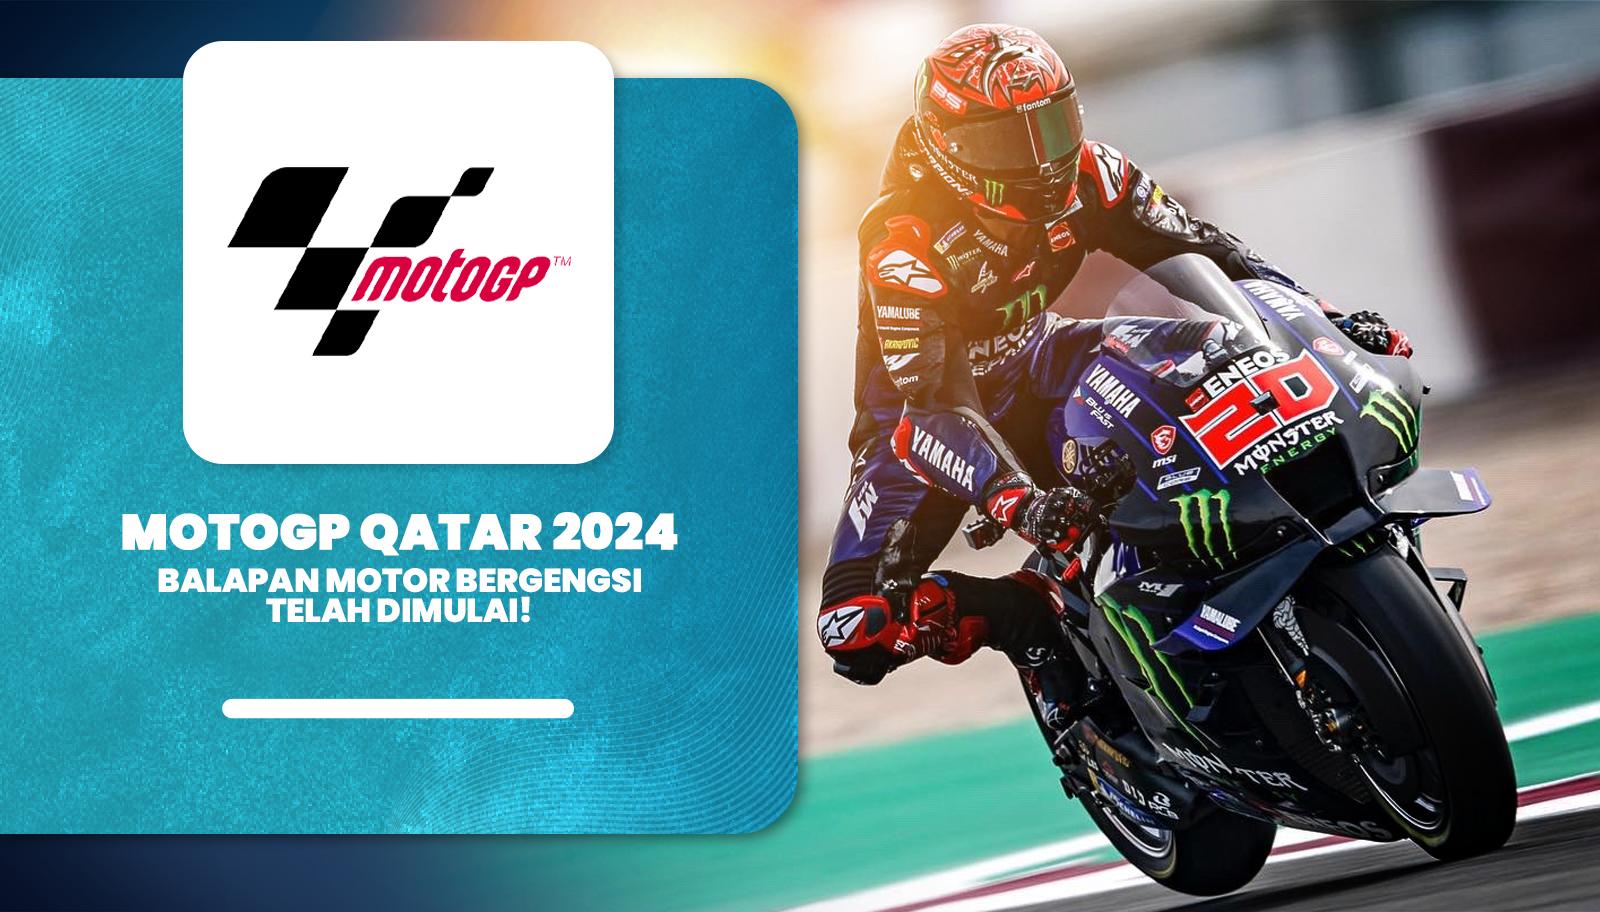 MotoGP Qatar 2024 Balapan Motor Bergengsi Telah Dimulai!